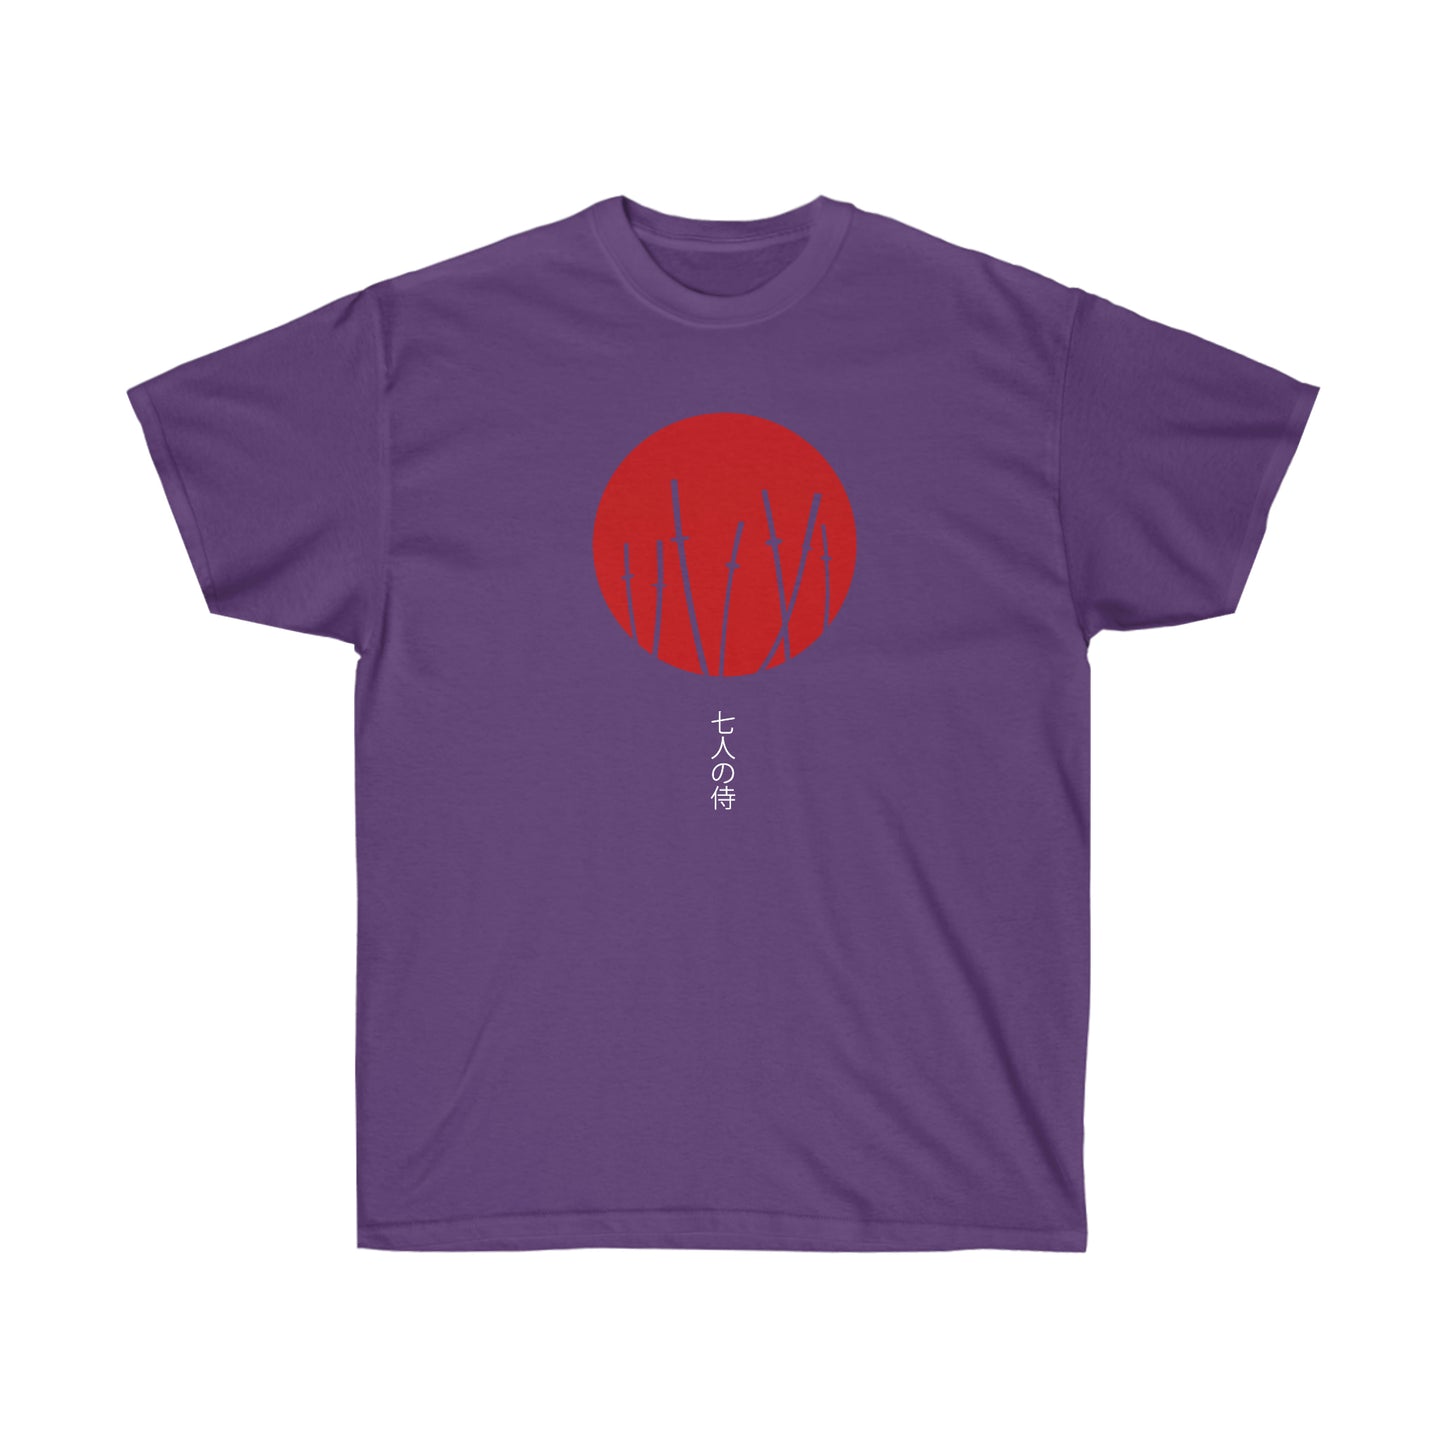 Seven Samurais swords T-Shirt